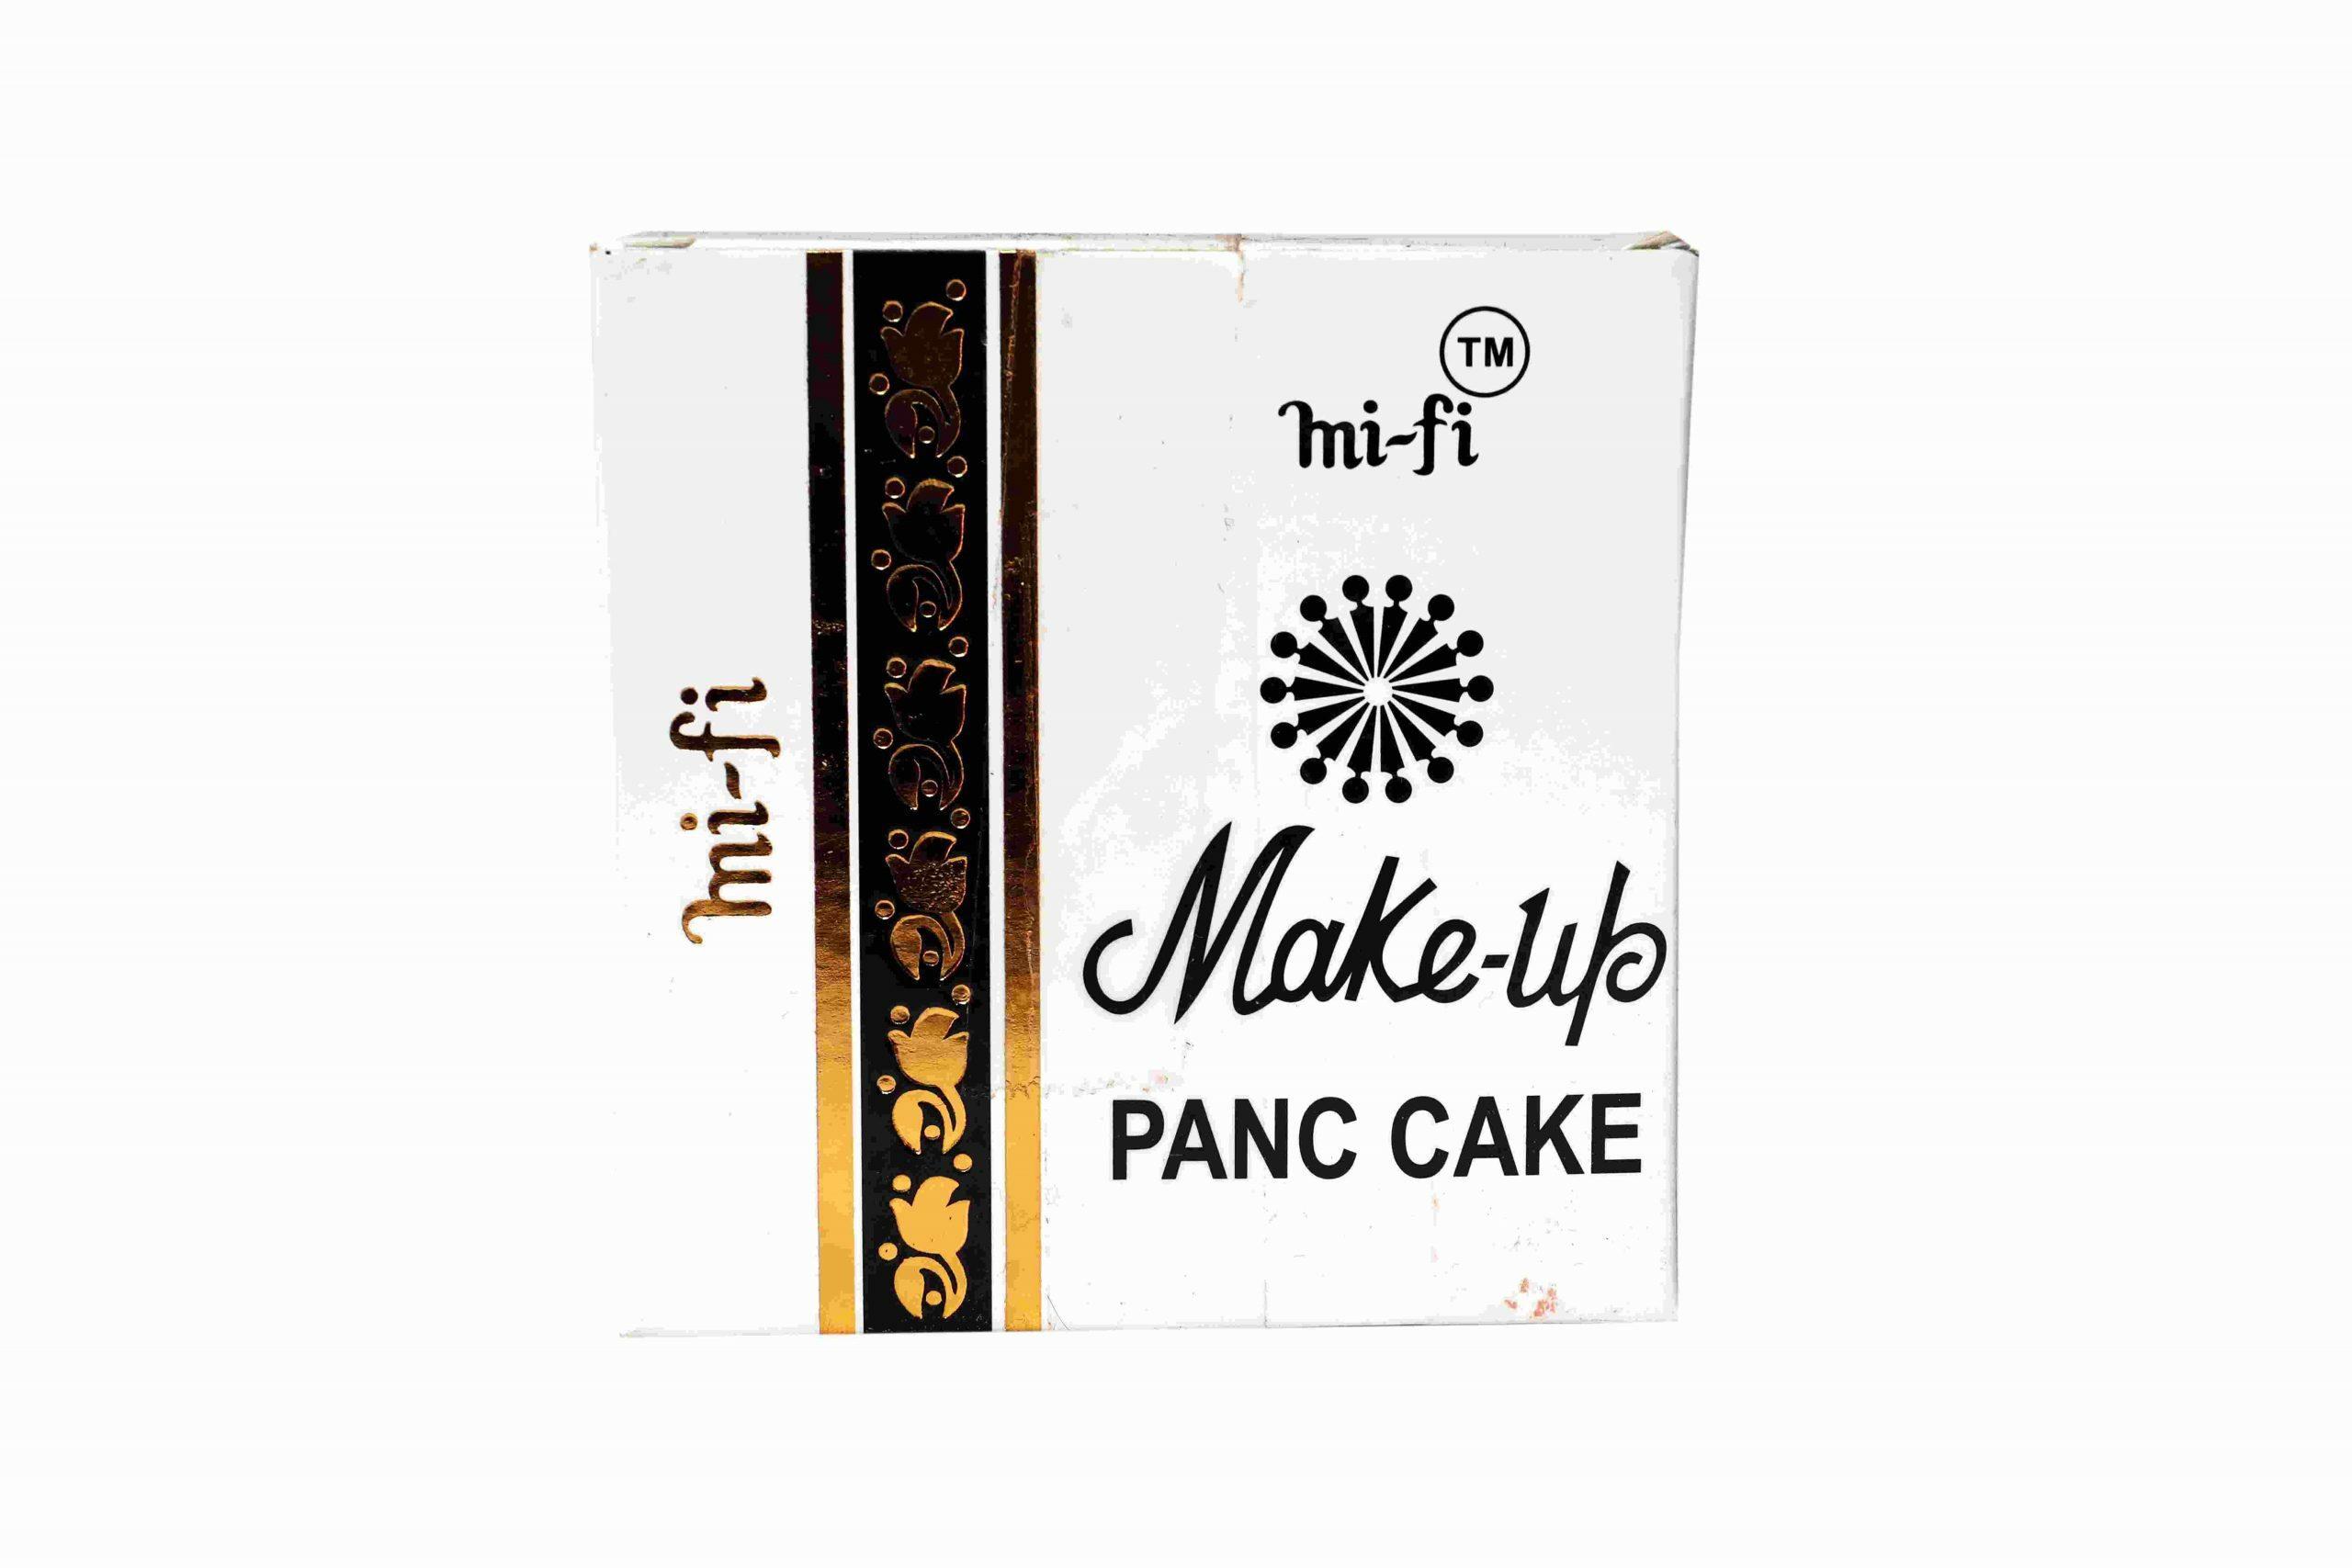 Mi Fi Makeup Panc Cake No 21 To 30